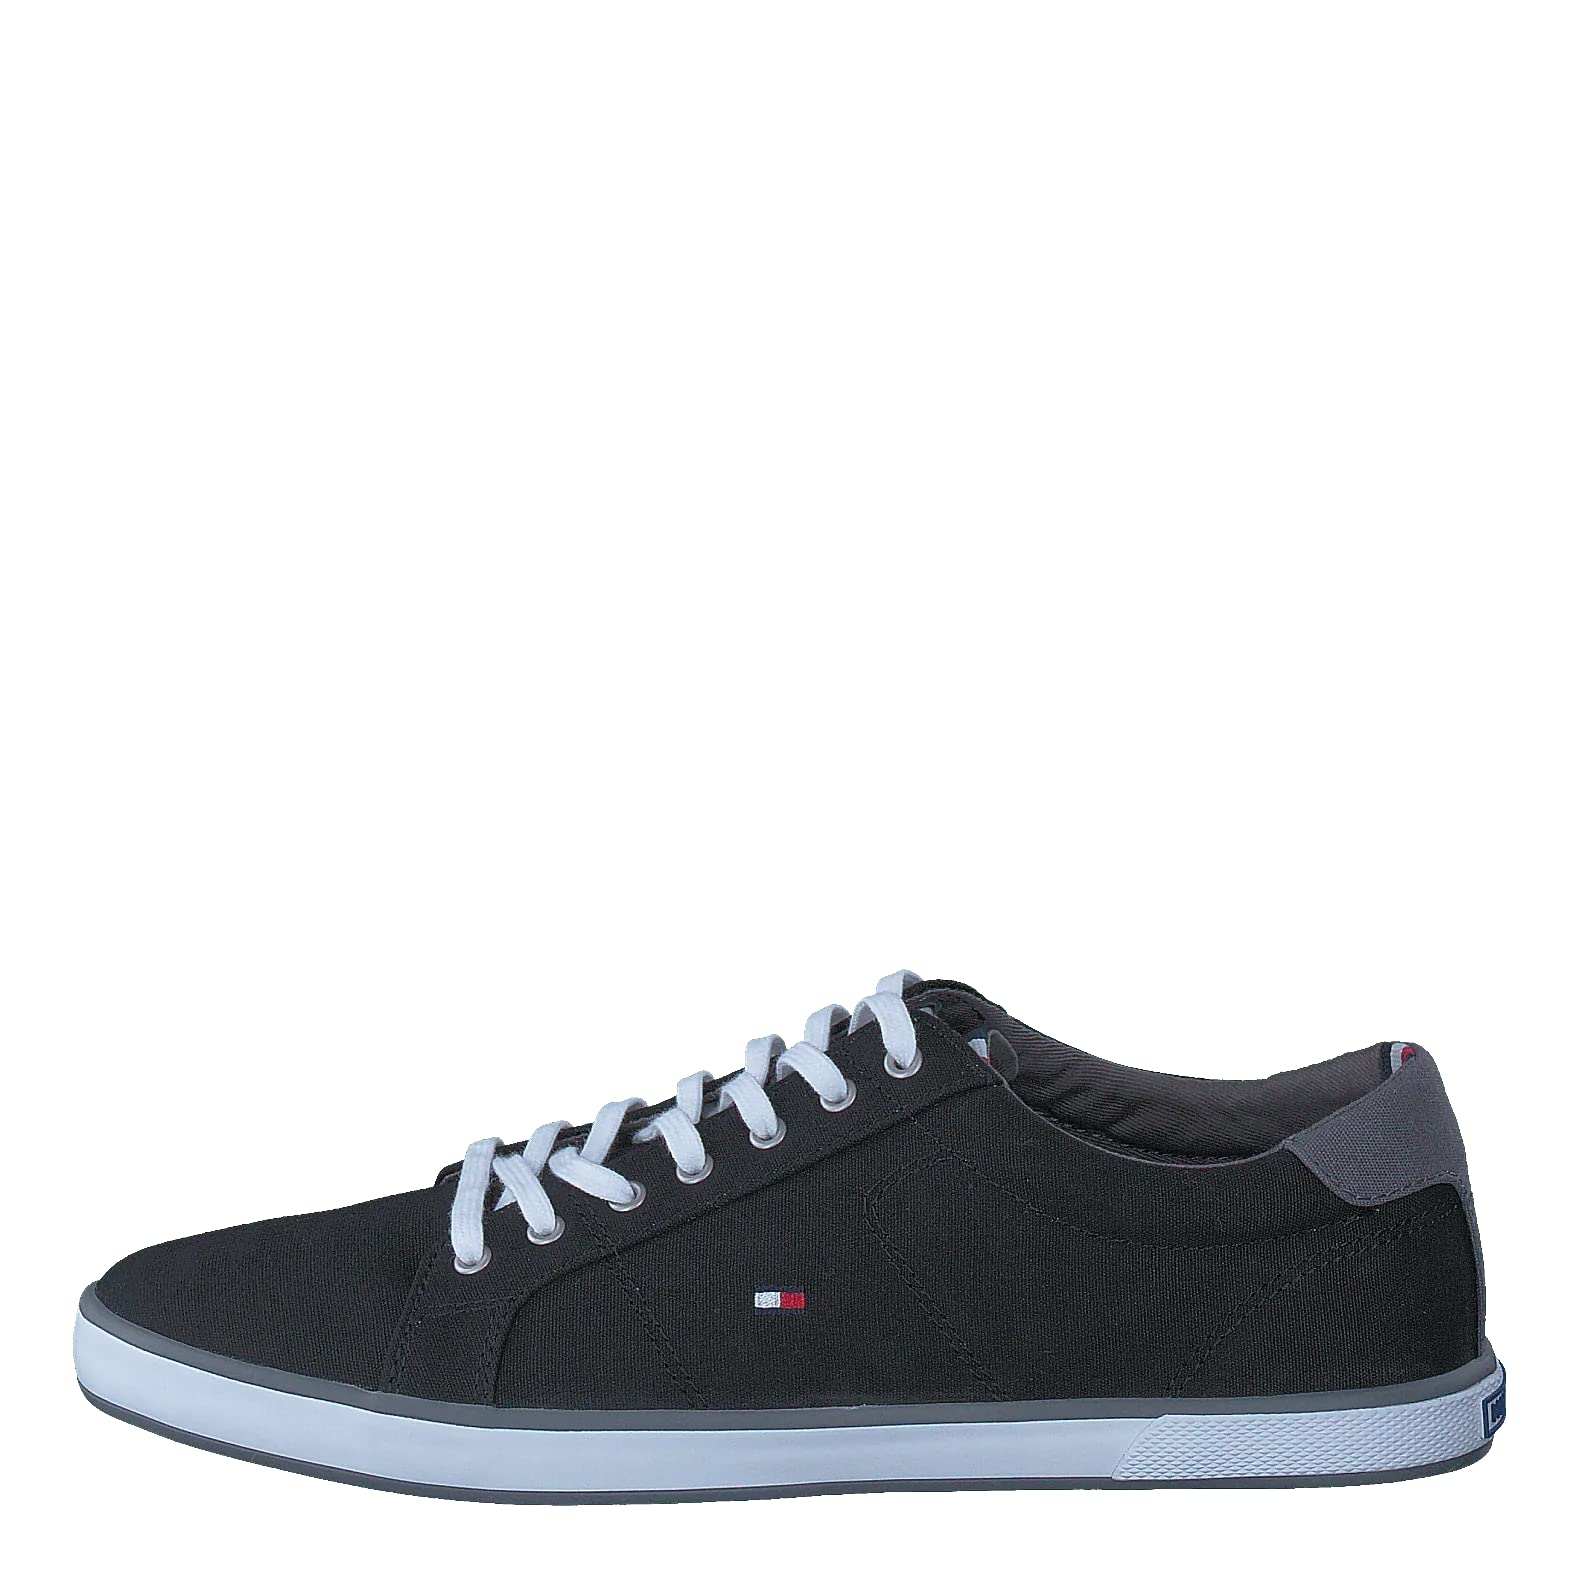 Tommy Hilfiger Herren Sneakers H2285Arlow 1D, Schwarz (Black), 40